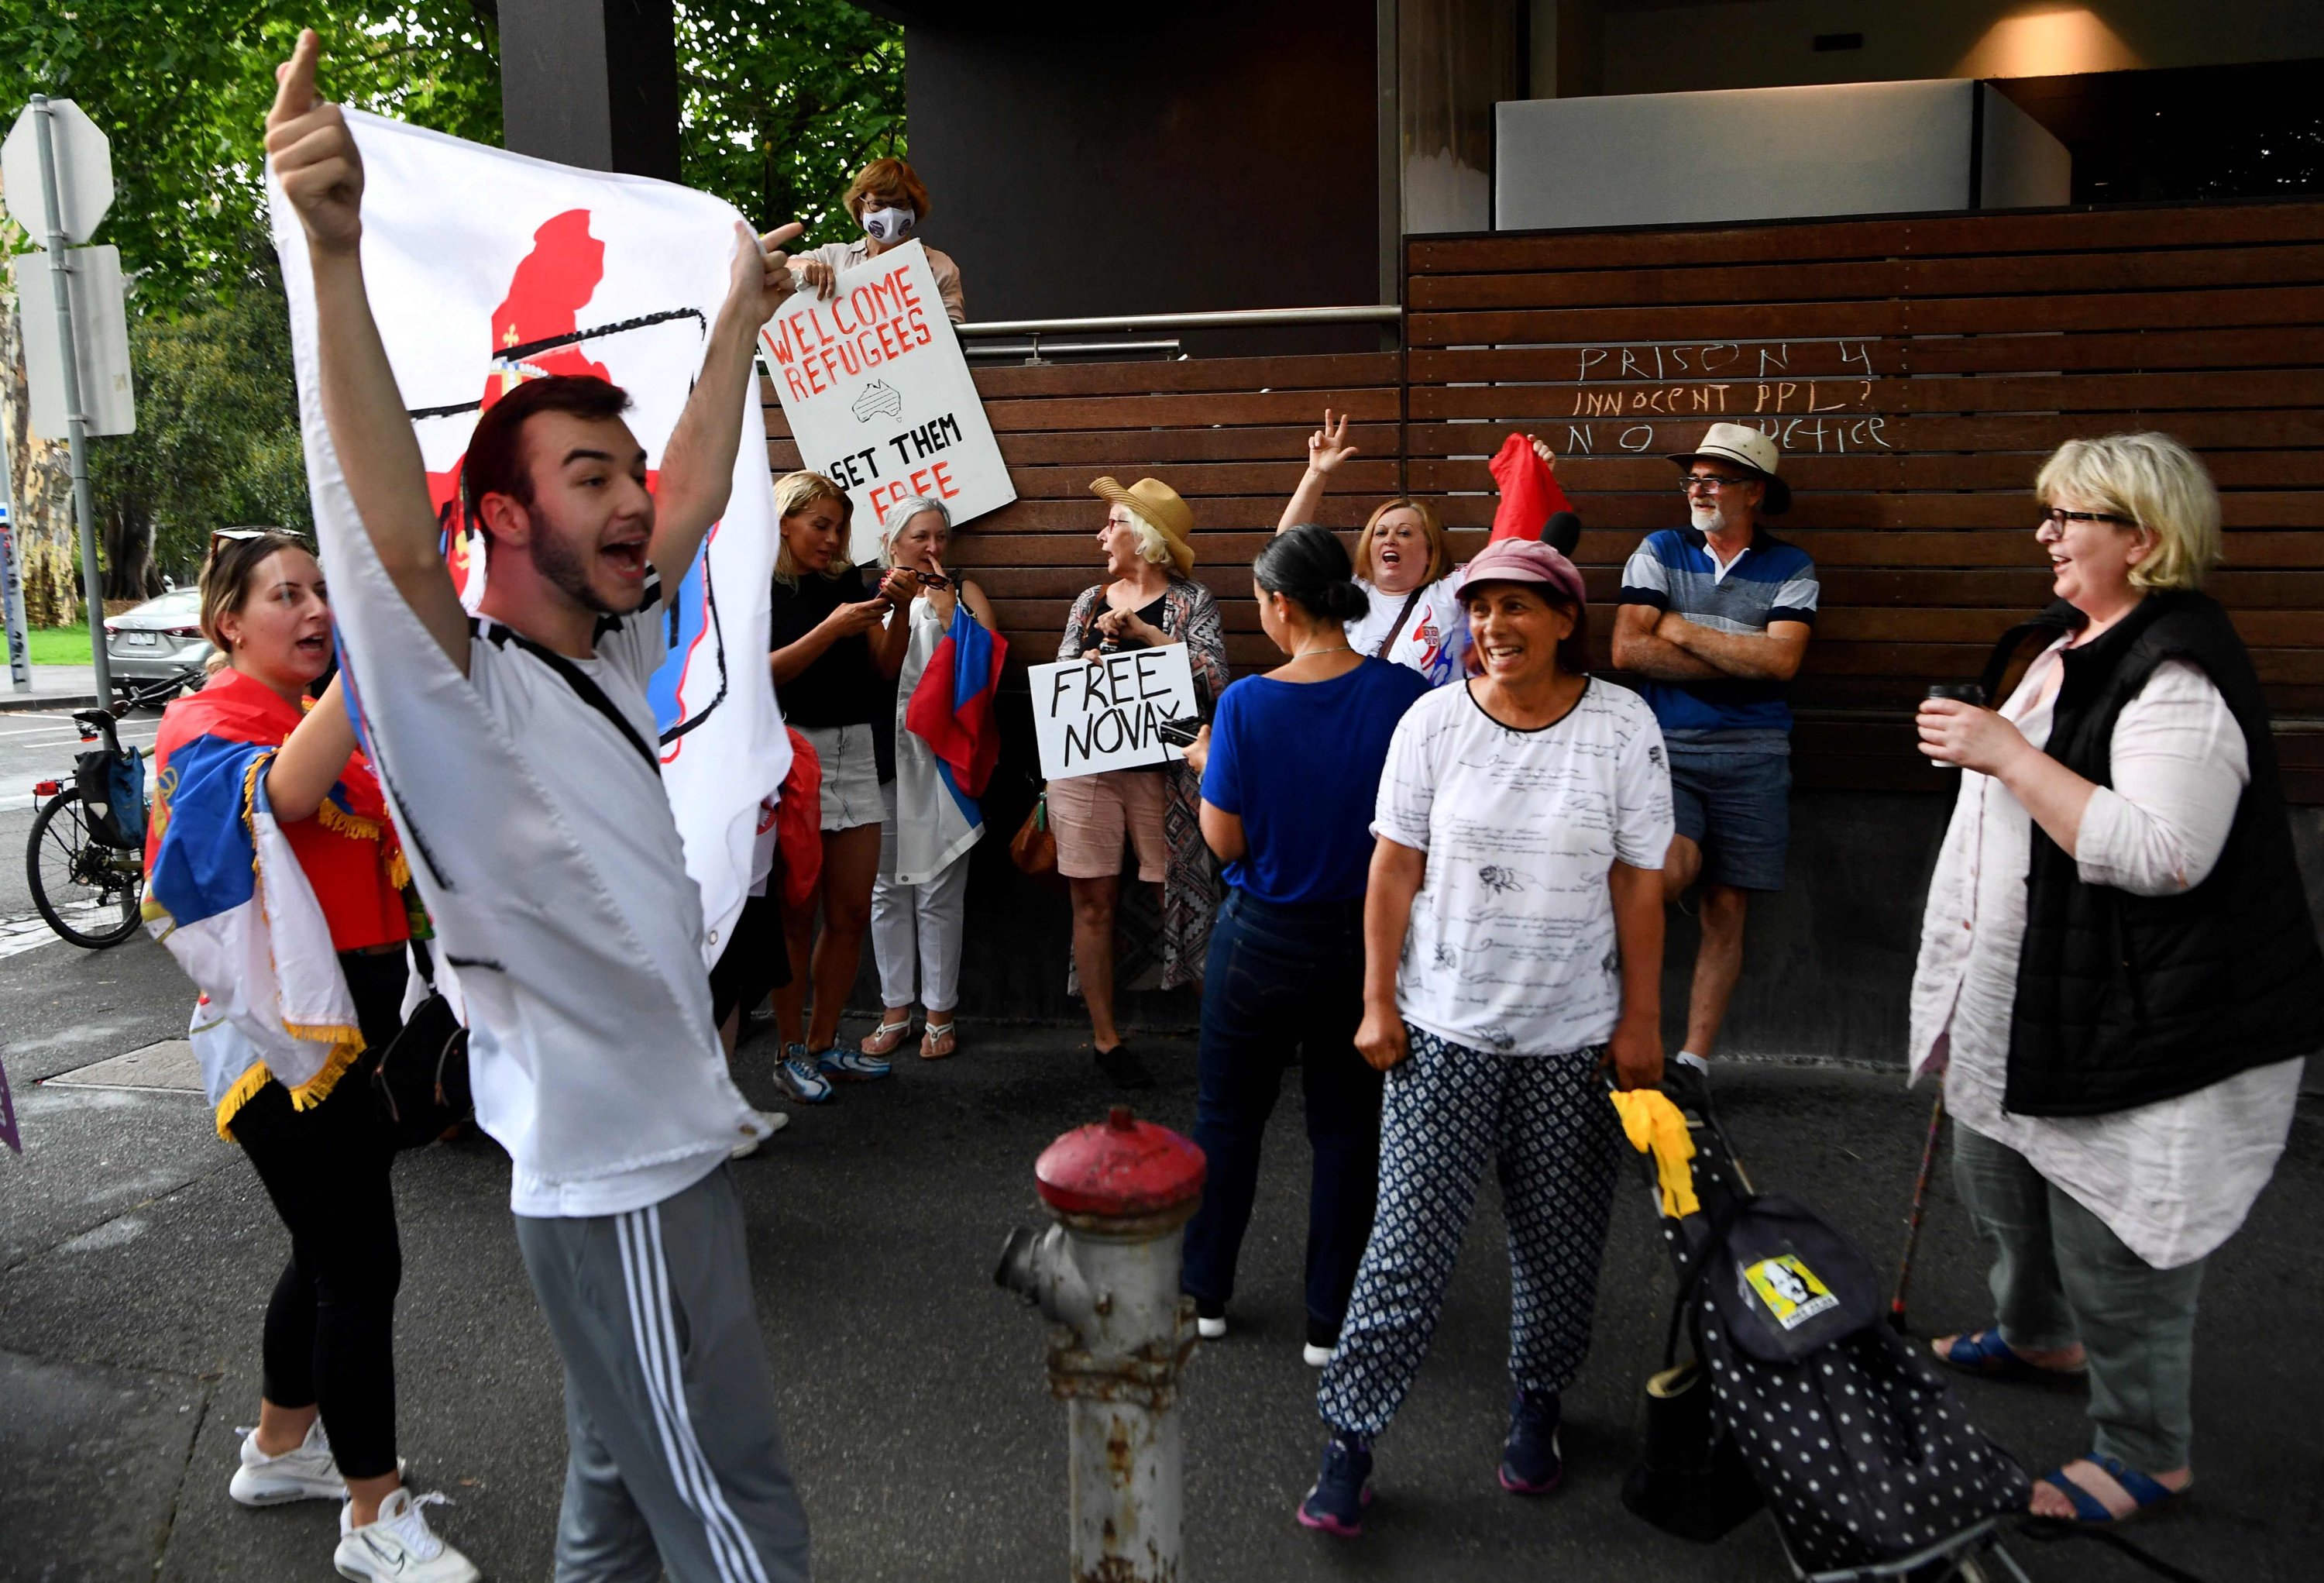 Anggota komunitas Serbia setempat berkumpul di luar hotel tempat juara tenis Serbia Novak Djokovic dilaporkan menginap, Melbourne, Australia, 6 Januari 2022. (AFP Photo)